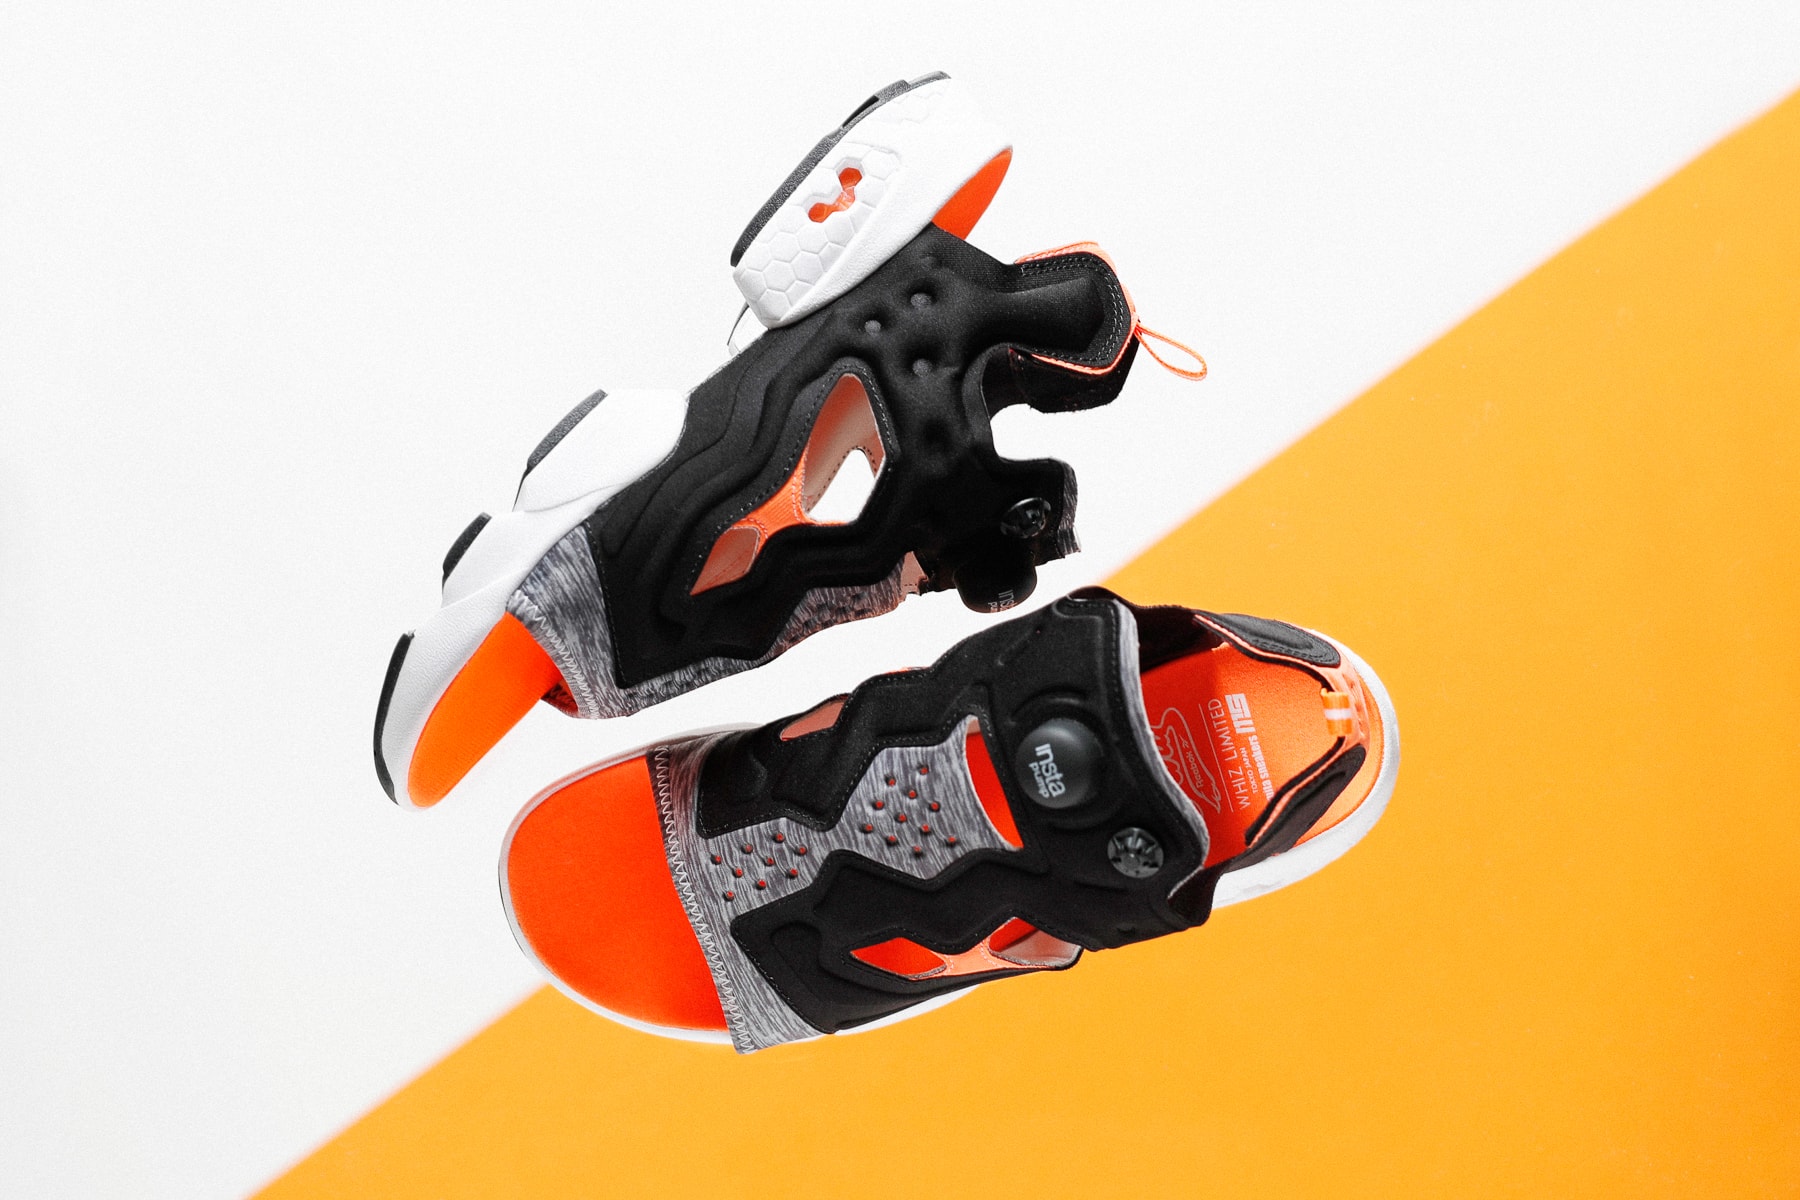 mita sneakers x WHIZ LIMITED の名タッグより Instapump Fury Sandal が登場 ハイテクスニーカーのDNAと抜群の履き心地を継承した夏のストリートに映える逸品